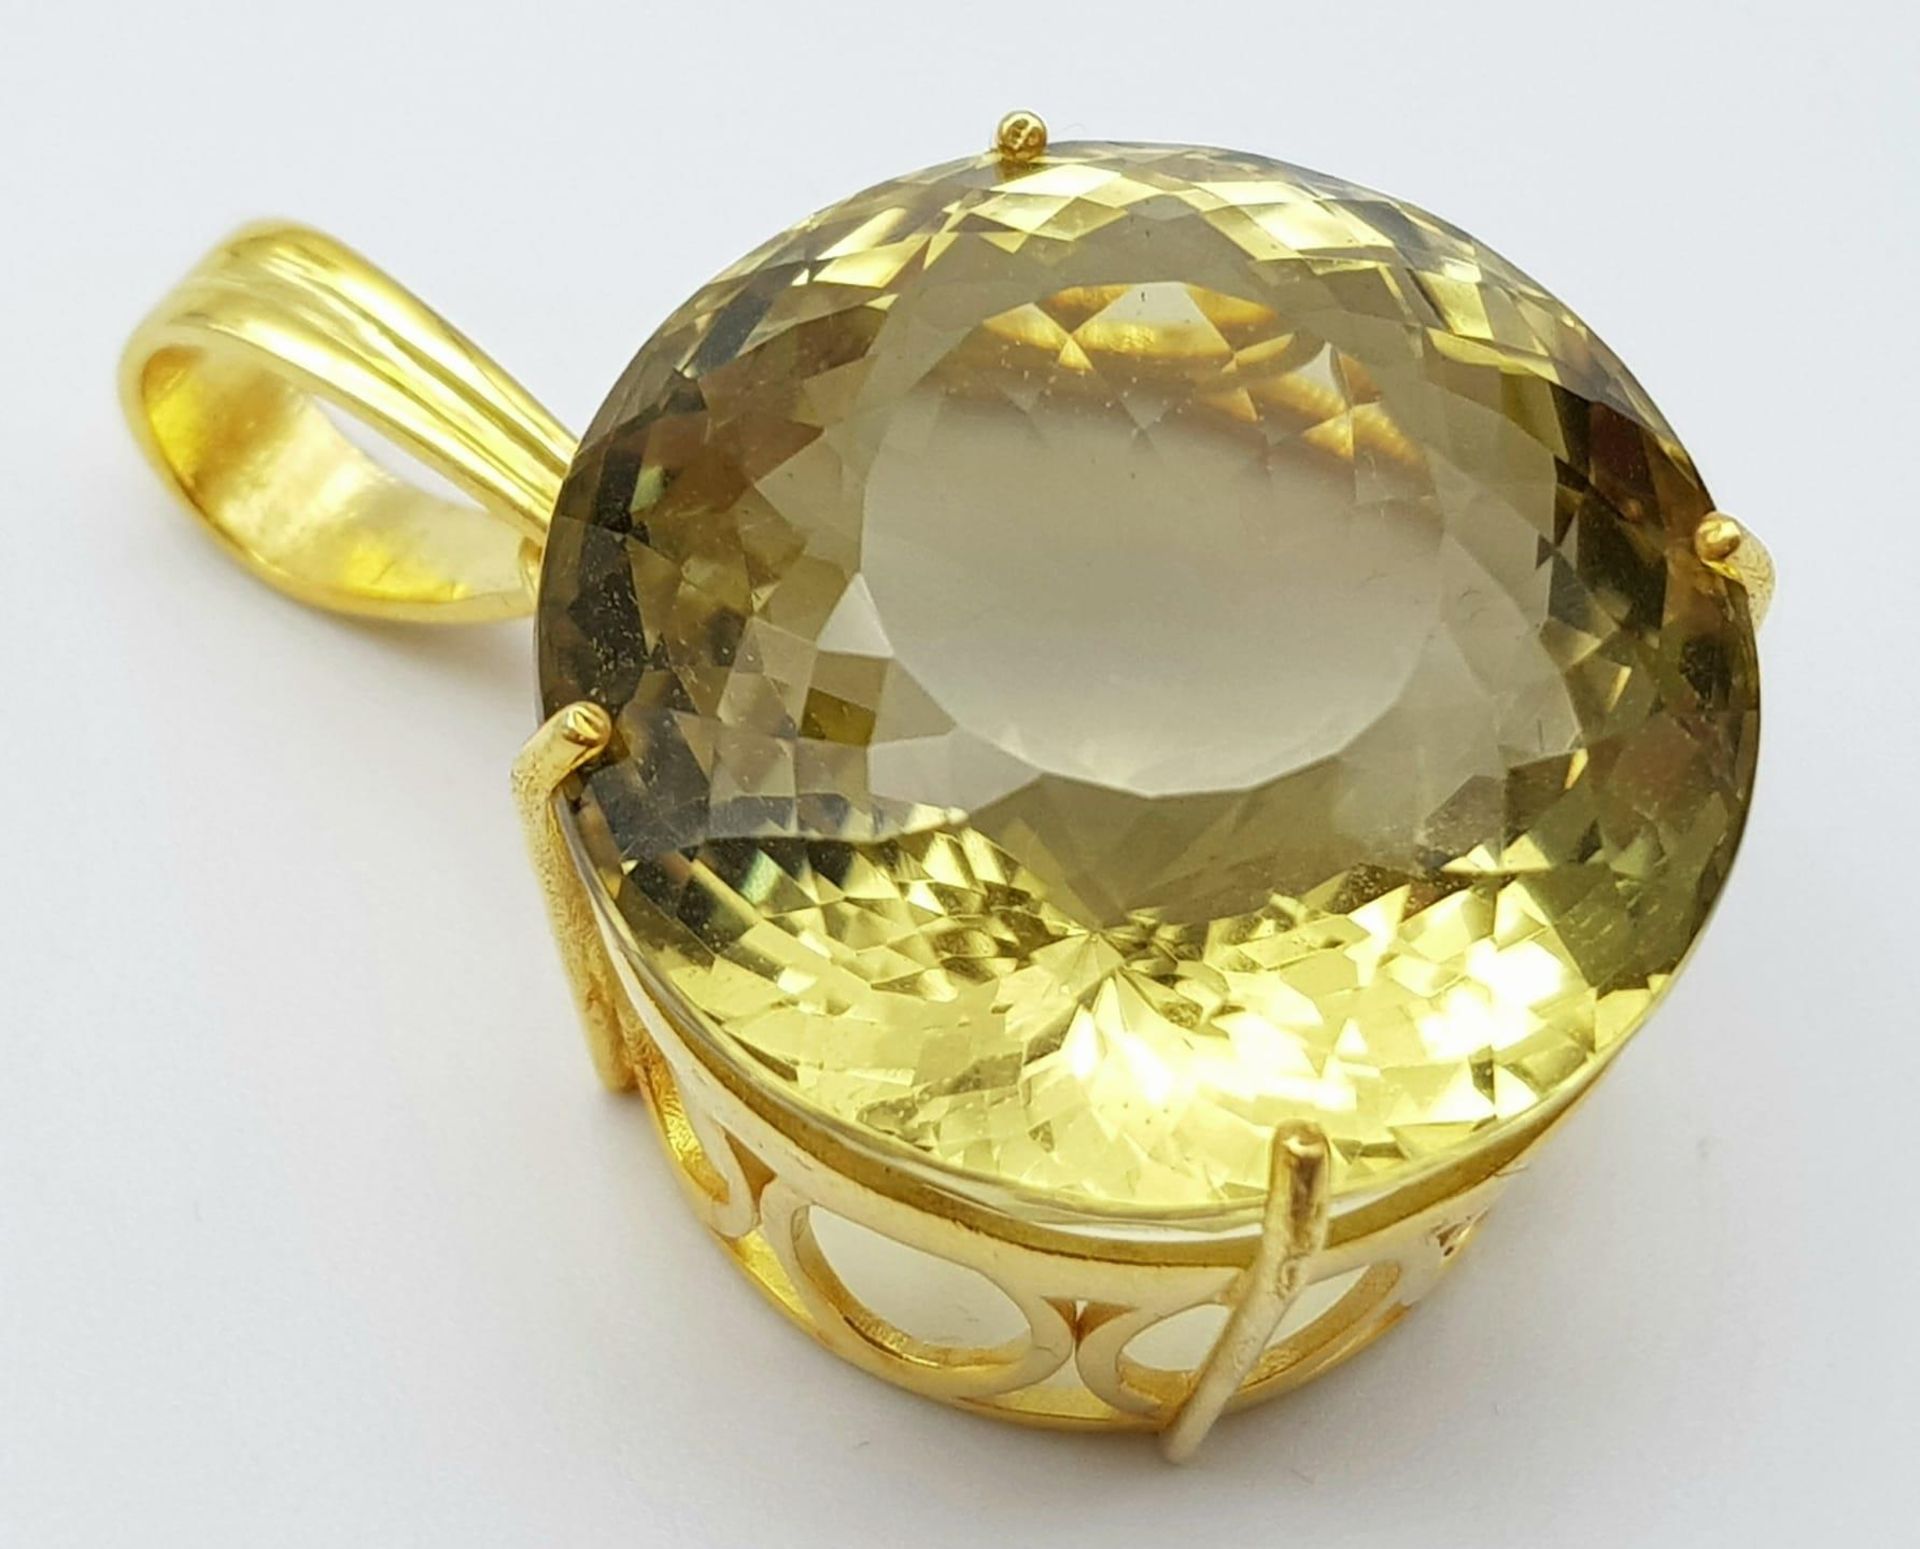 A Round Lemon Quartz Pendant set in Gold Plated 925 Silver. Weight - 20g. Lemon Quartz - 66.65ct.